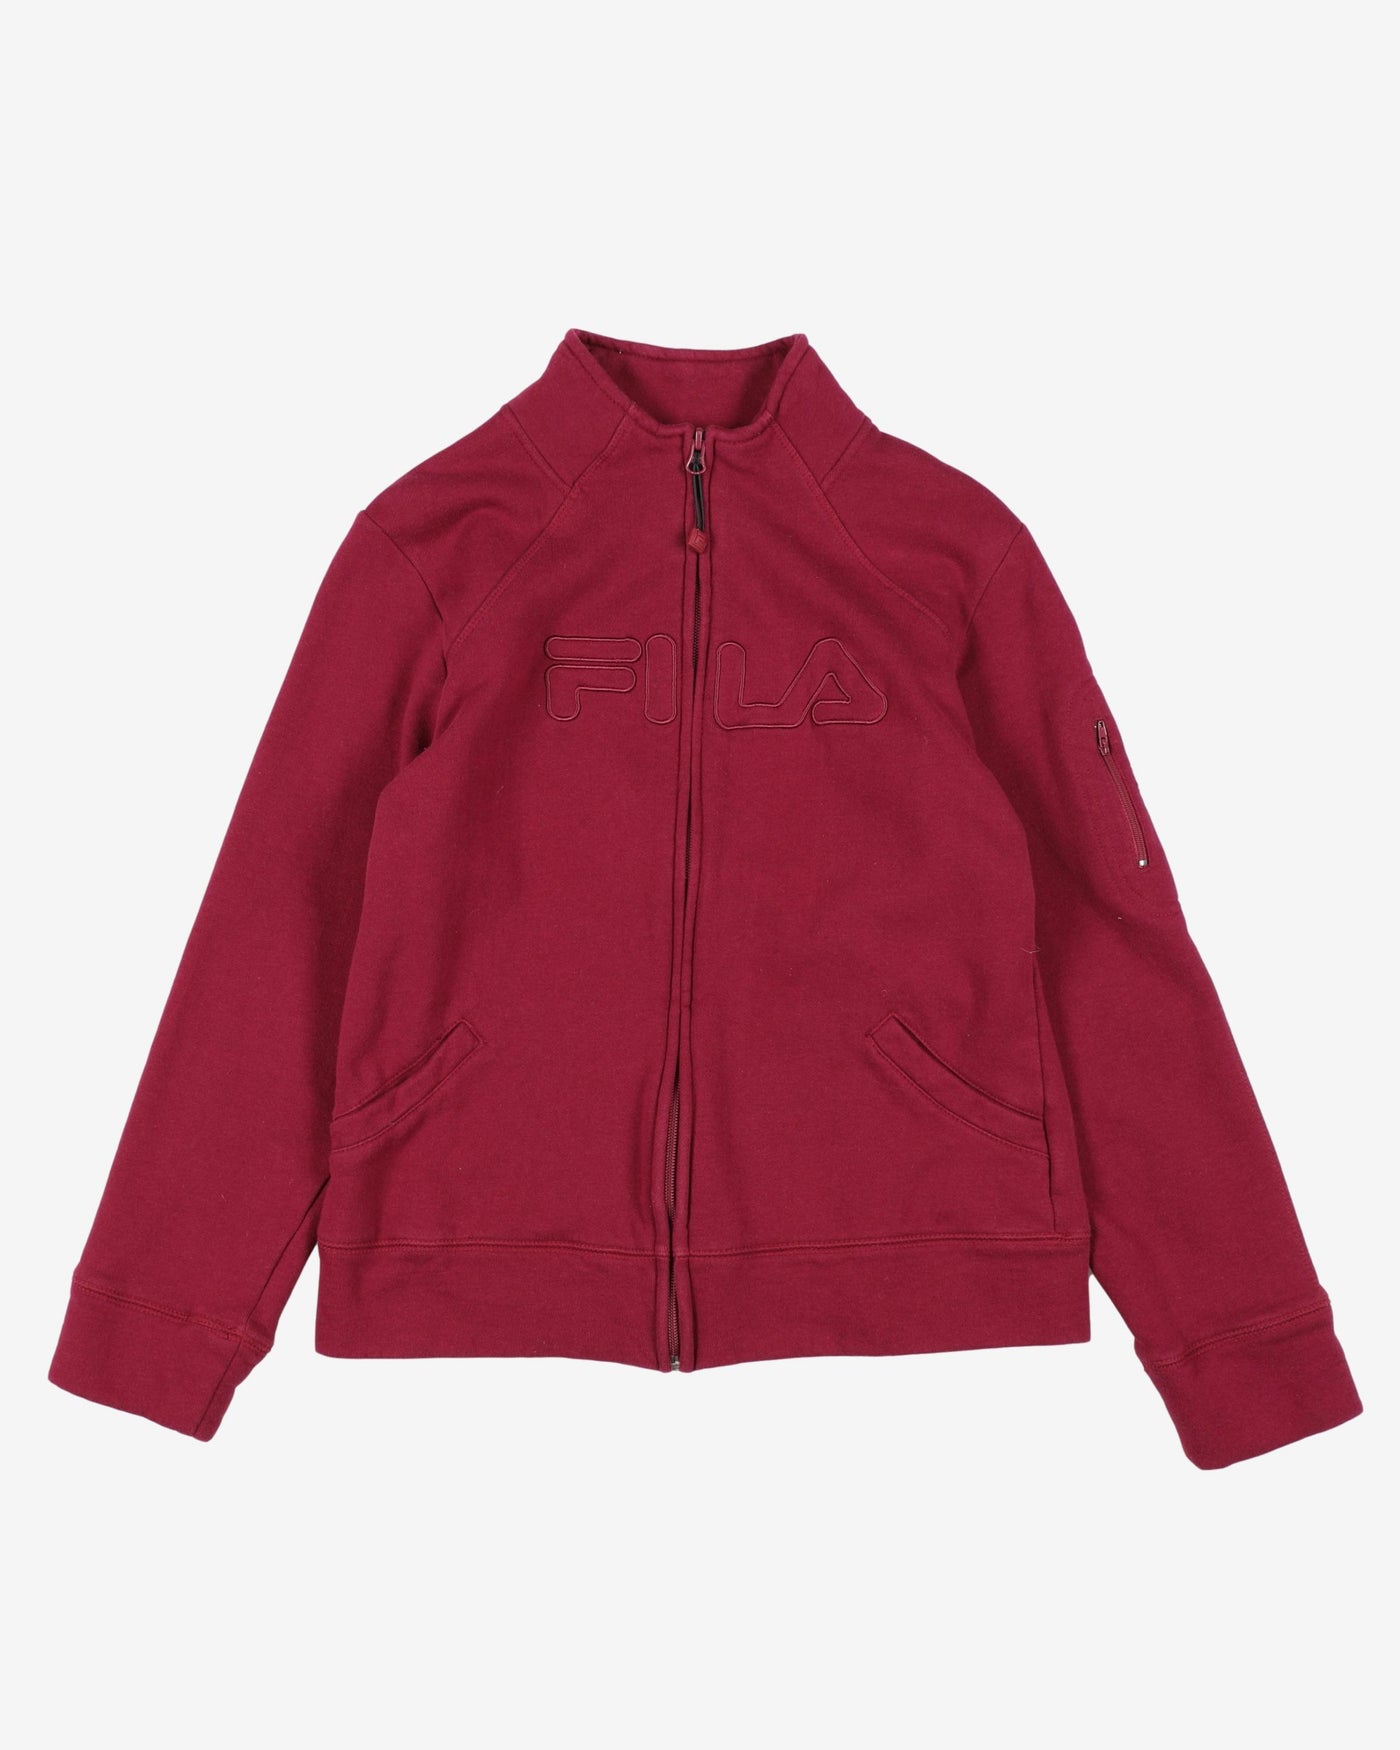 fila fuchsia red zip up sweatshirt - m